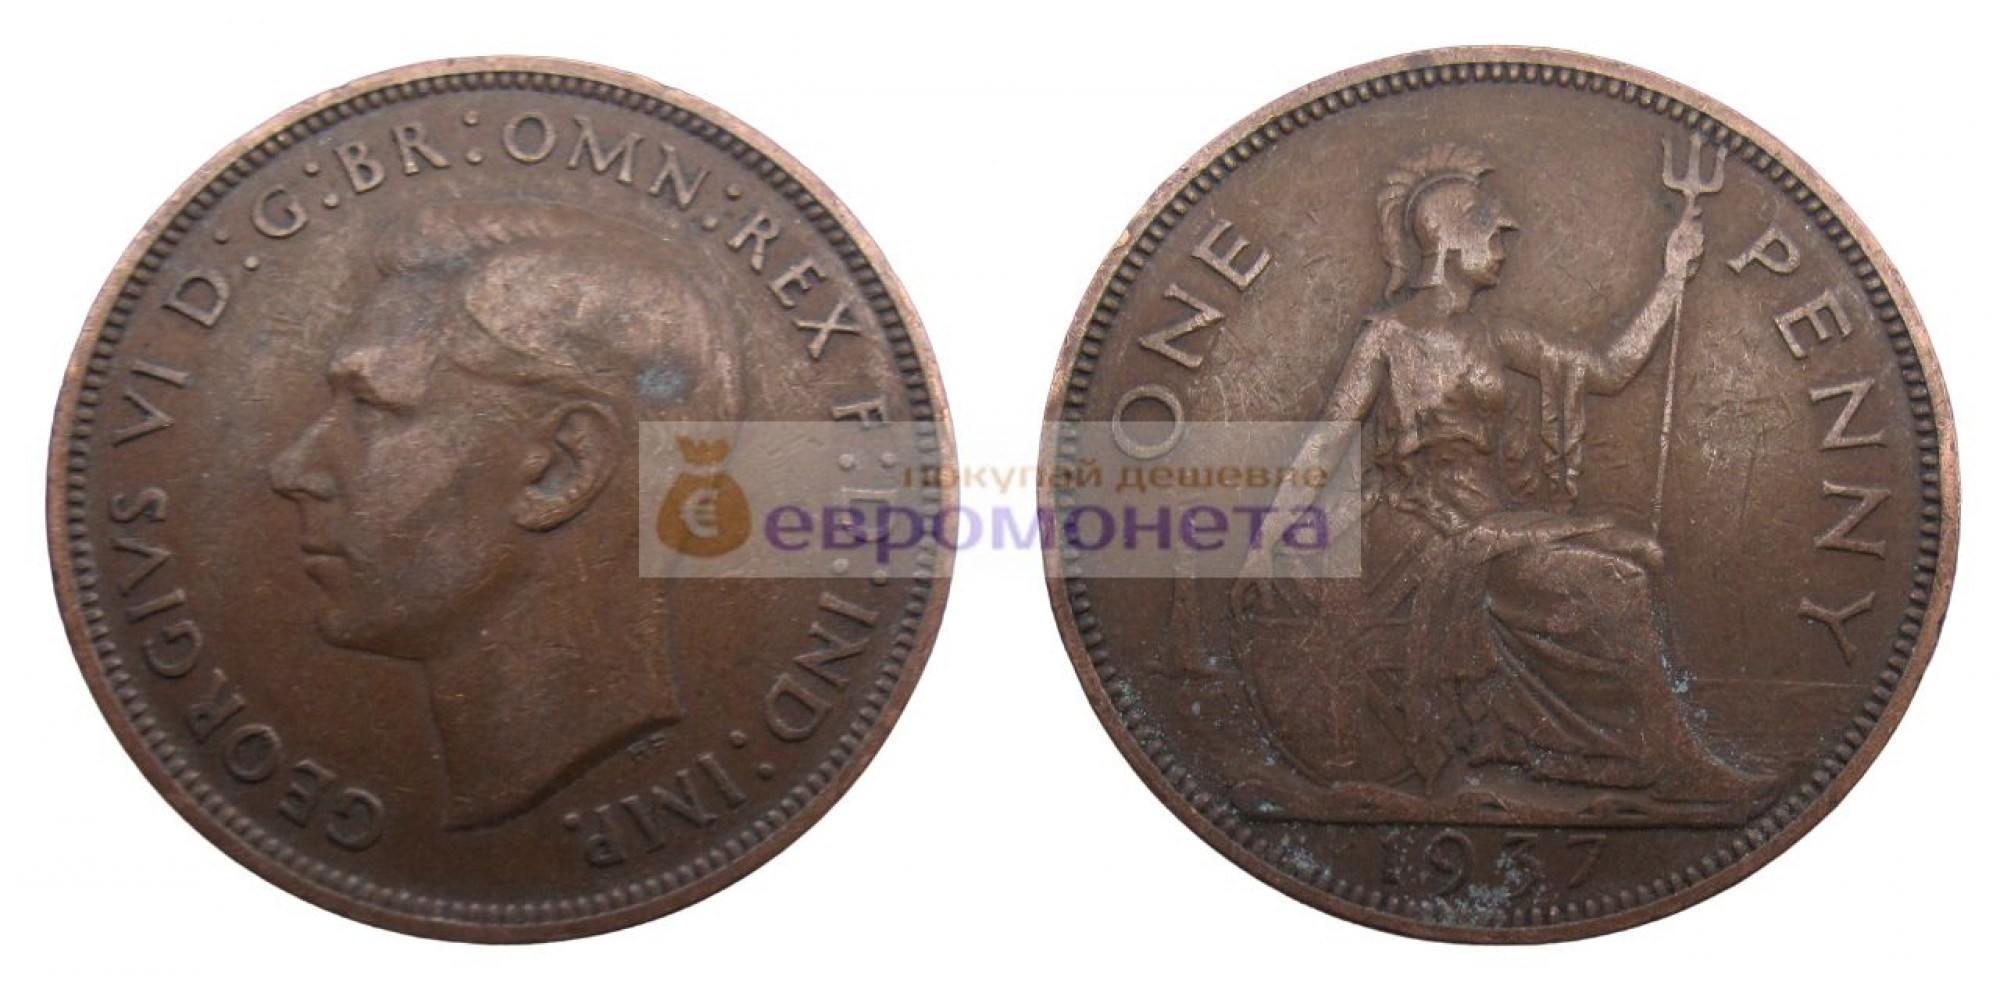 Великобритания 1 пенни 1937 год. Король Георг VI